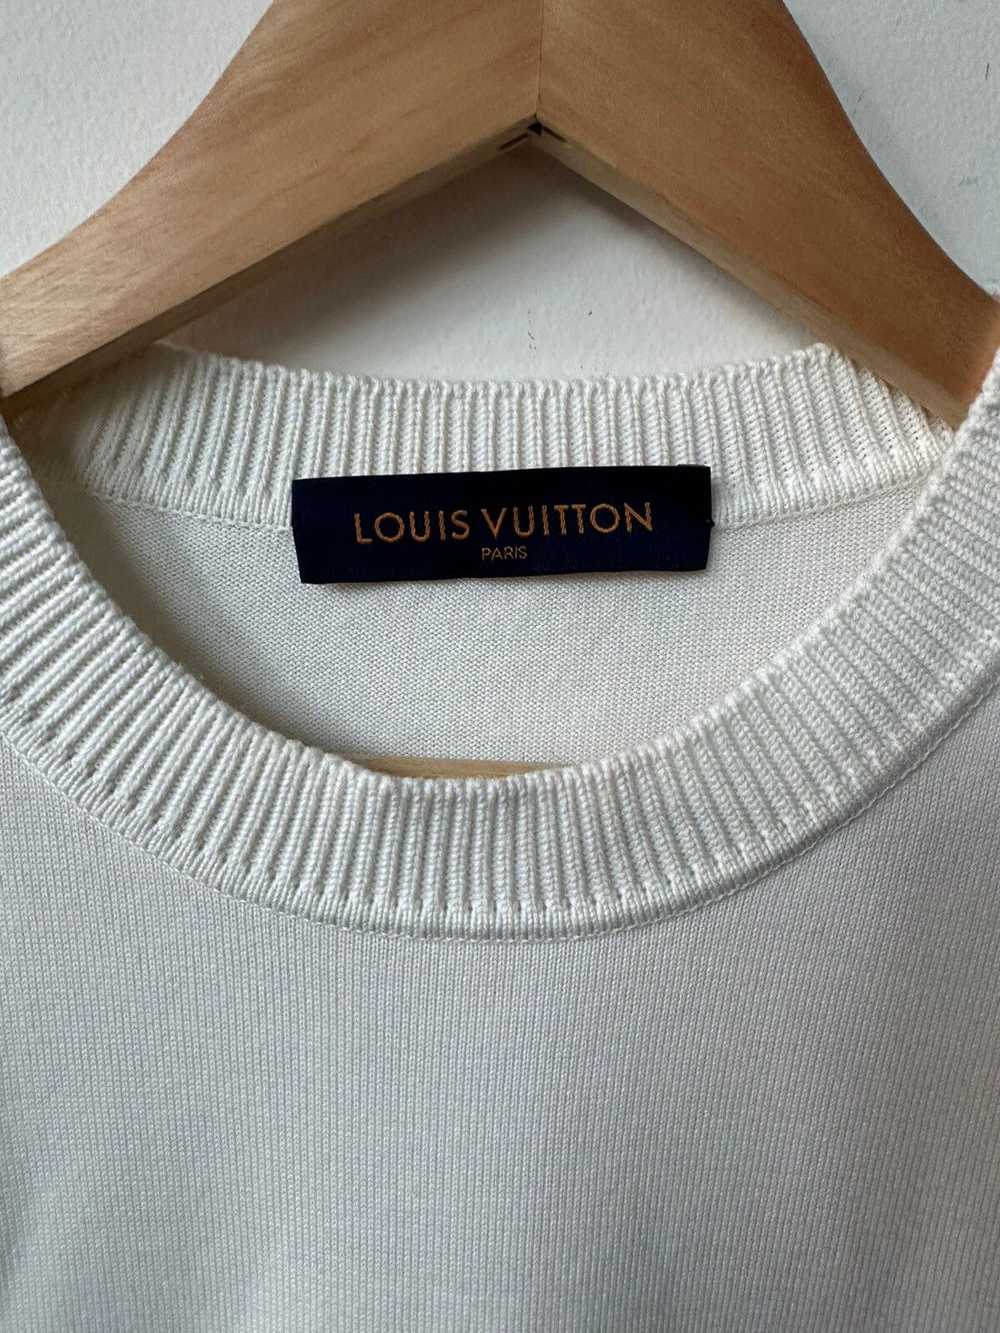 Louis Vuitton × Virgil Abloh Louis Vuitton Virgil… - image 4